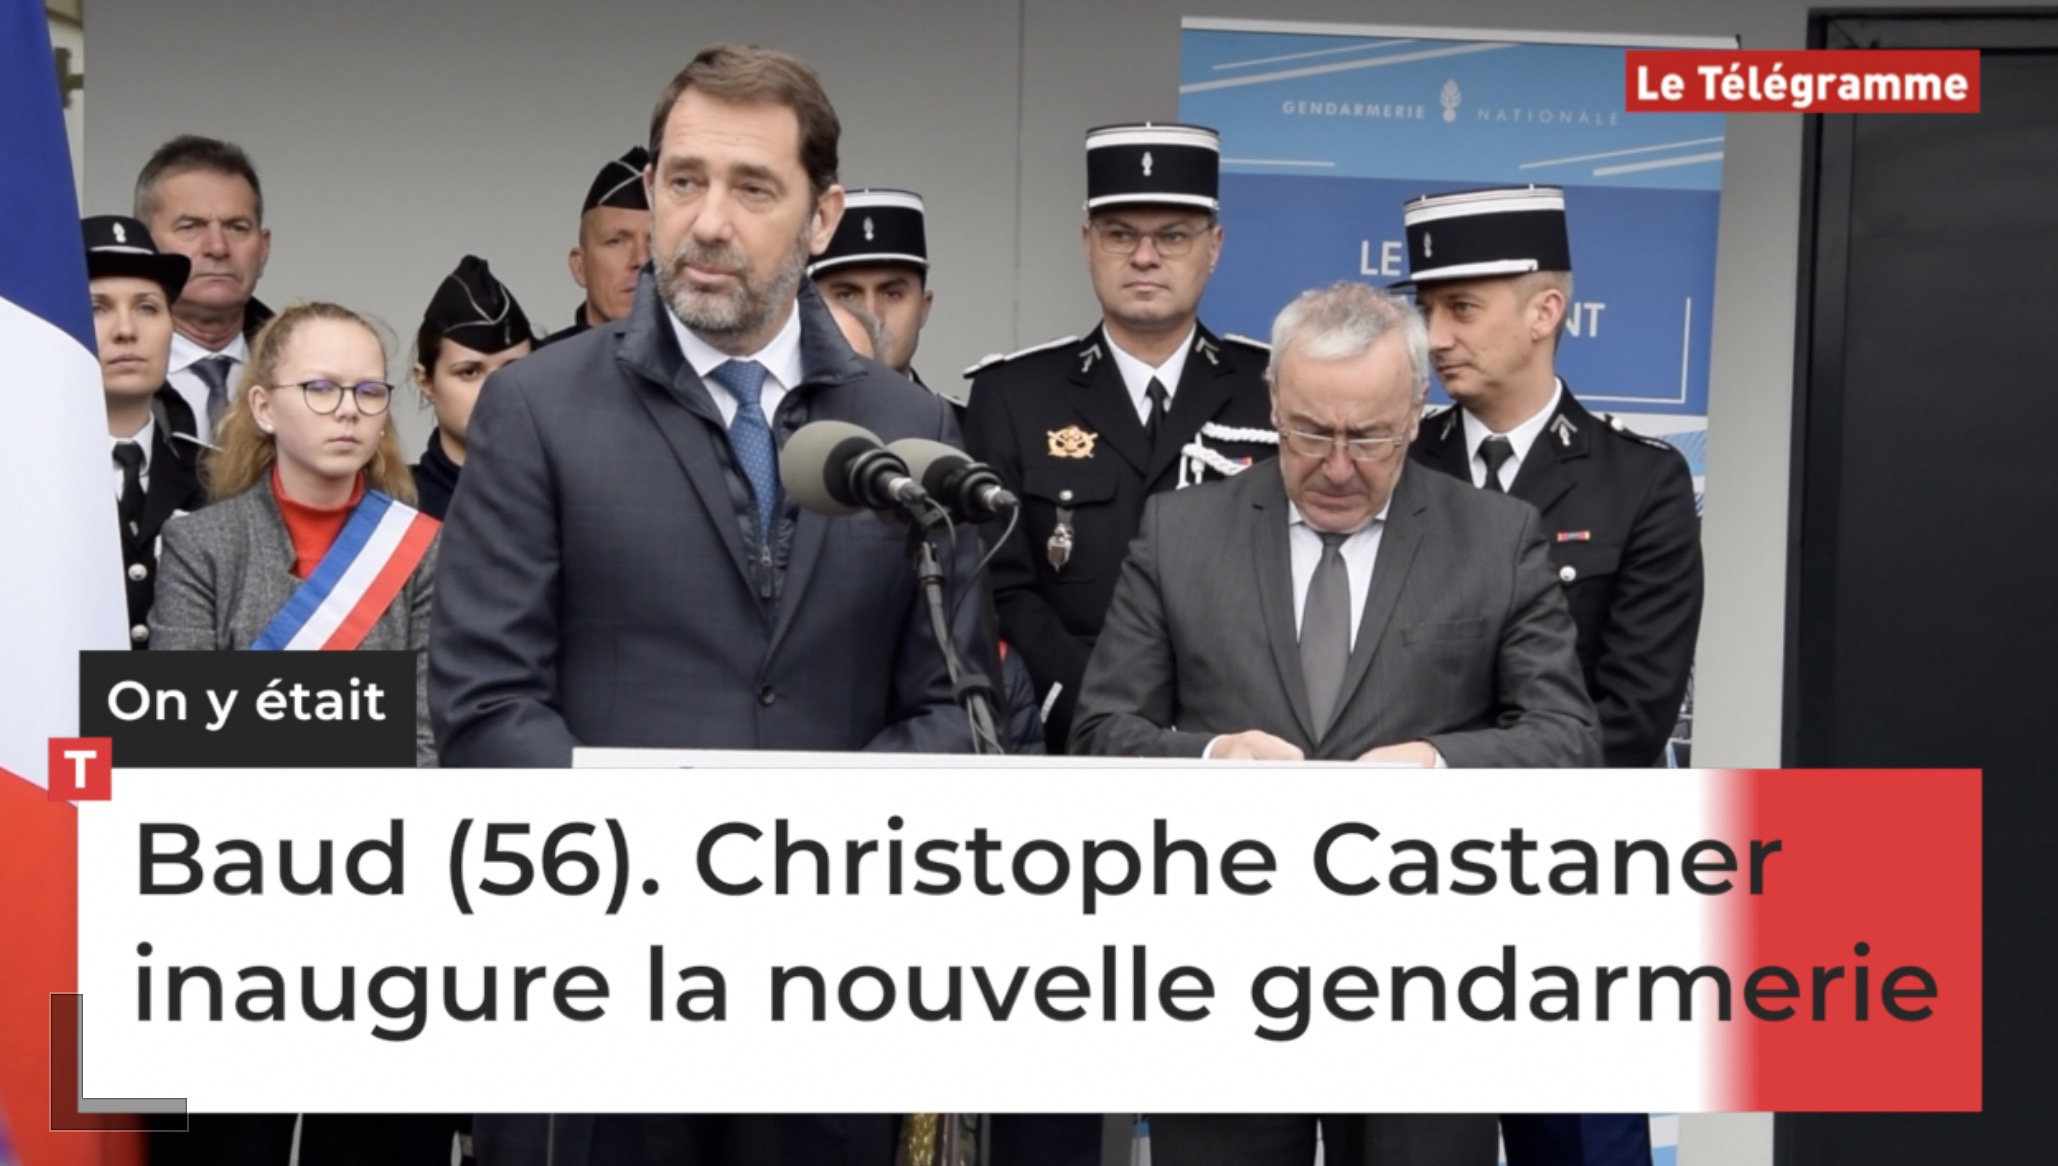 Baud (56). Christophe Castaner inaugure la nouvelle gendarmerie (Le Télégramme)